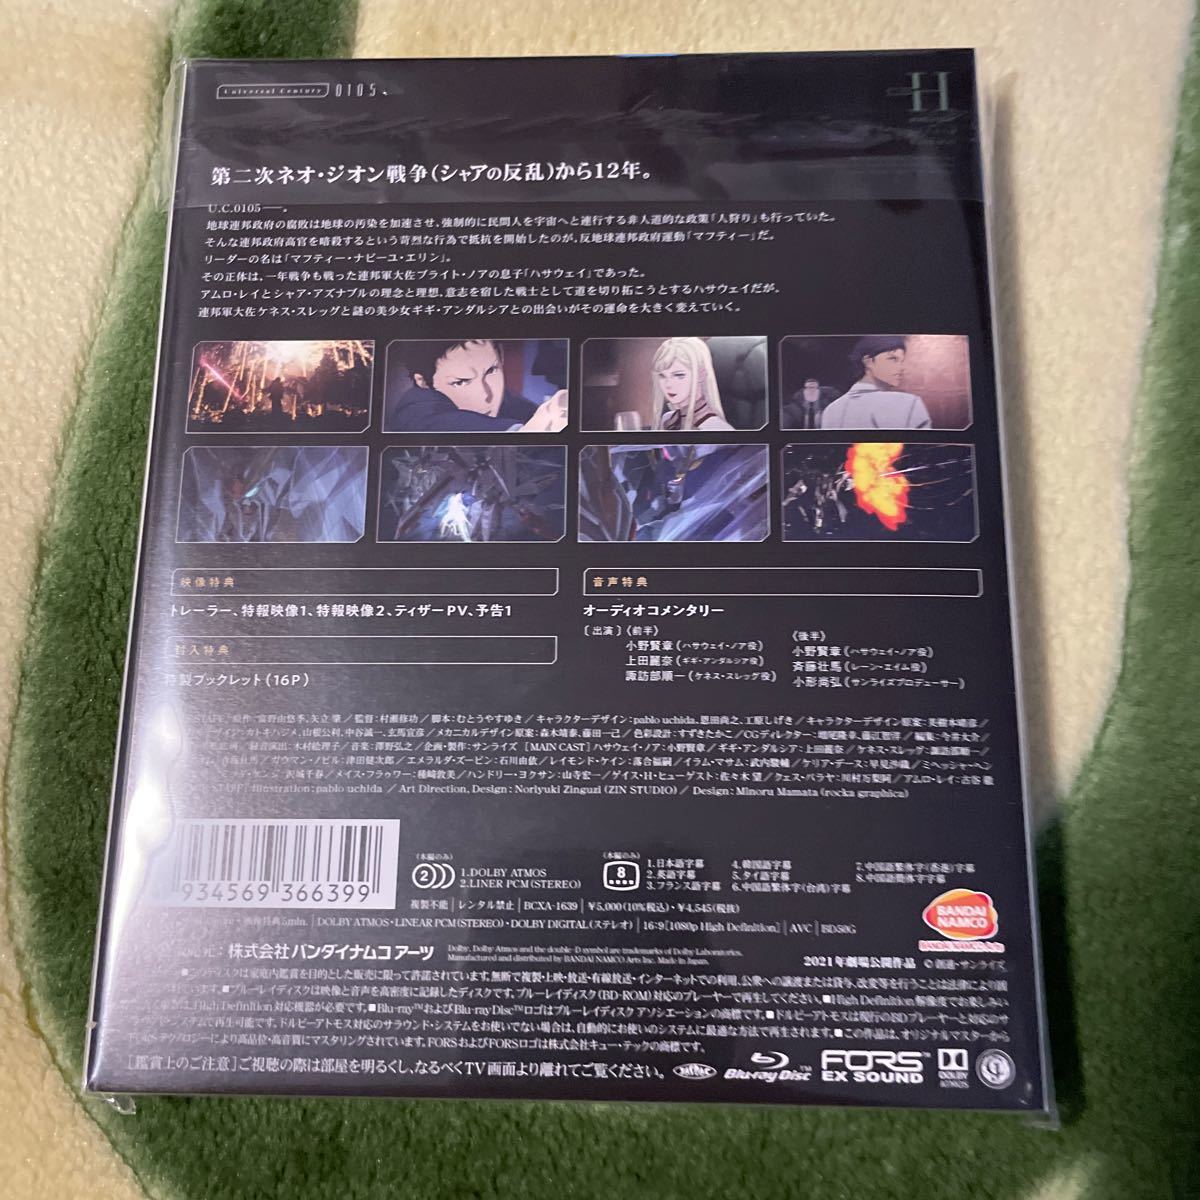 機動戦士ガンダム 閃光のハサウェイ Blu-ray 劇場先行通常版【送料無料】